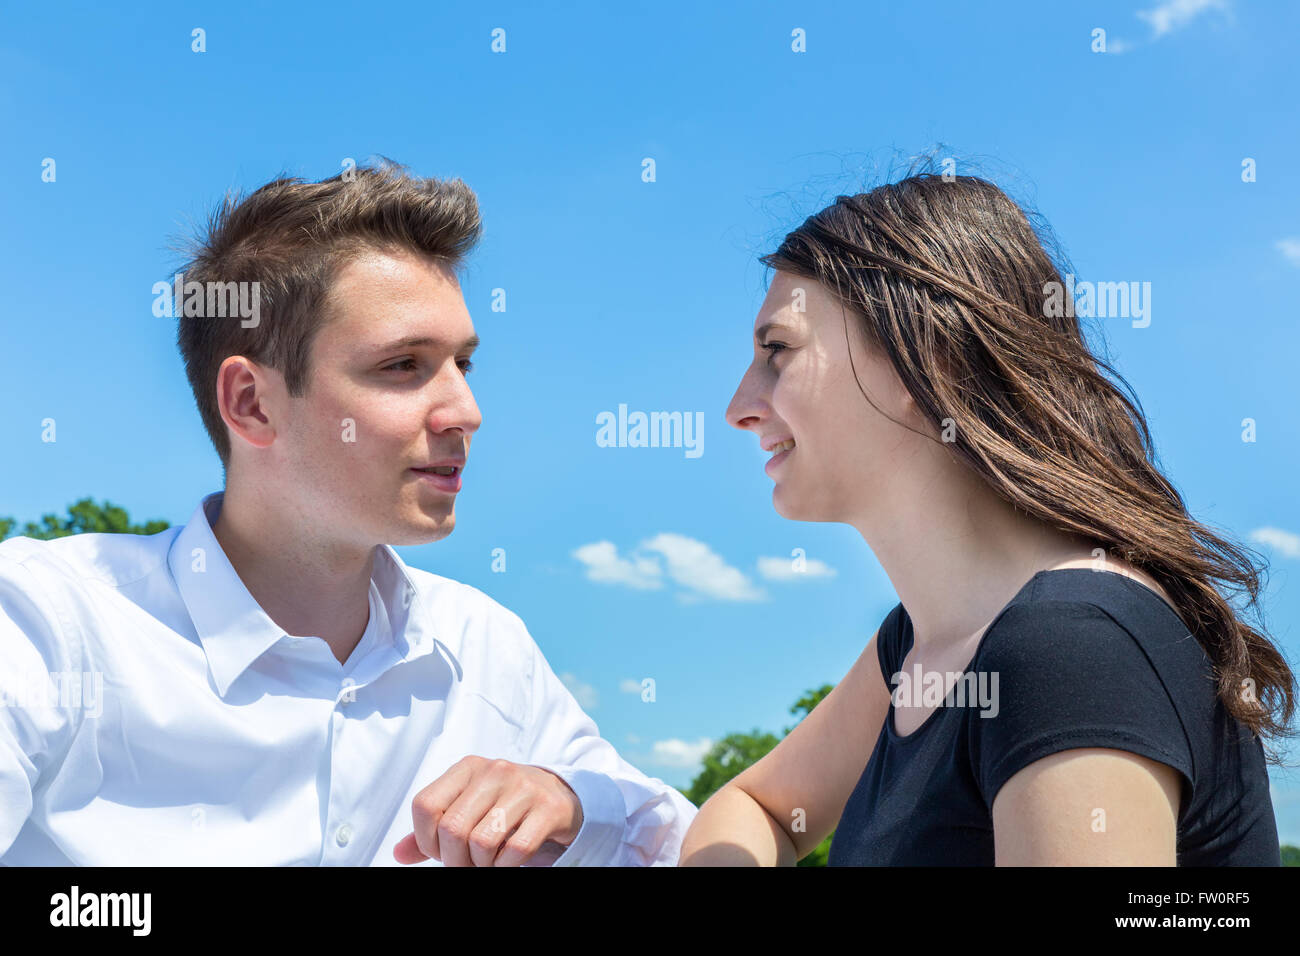 Jeune homme et femme en aime parler dehors avec ciel bleu Banque D'Images